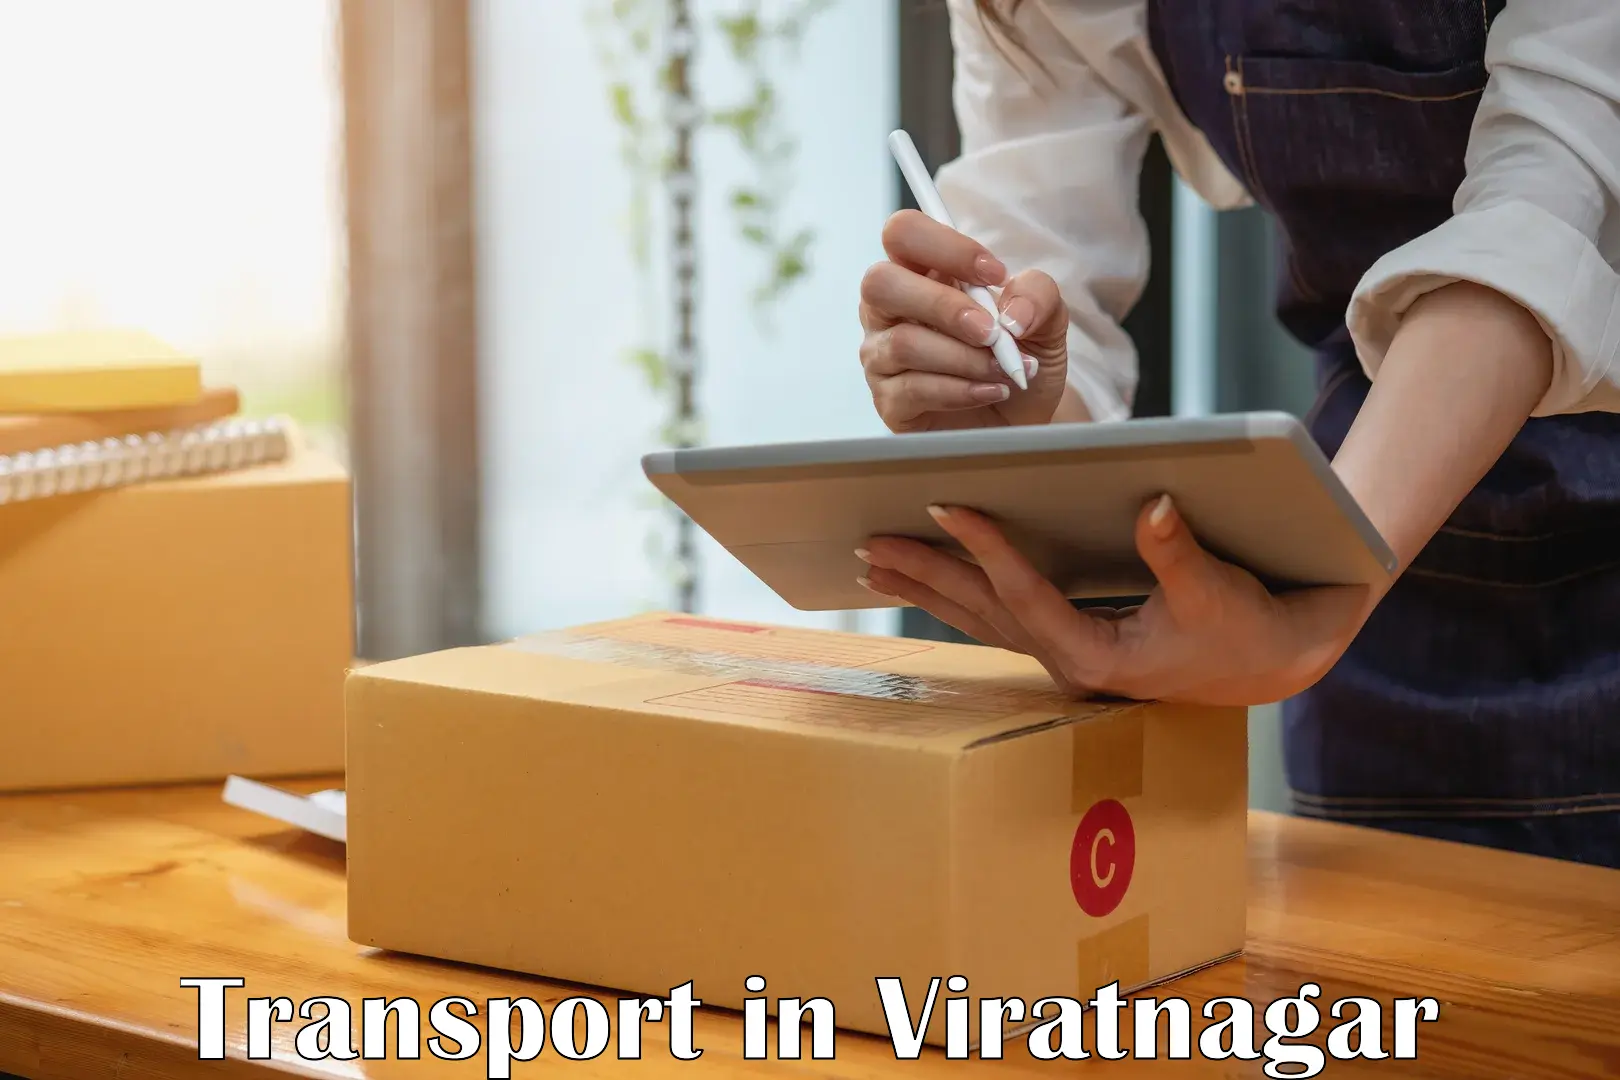 Transport in sharing in Viratnagar